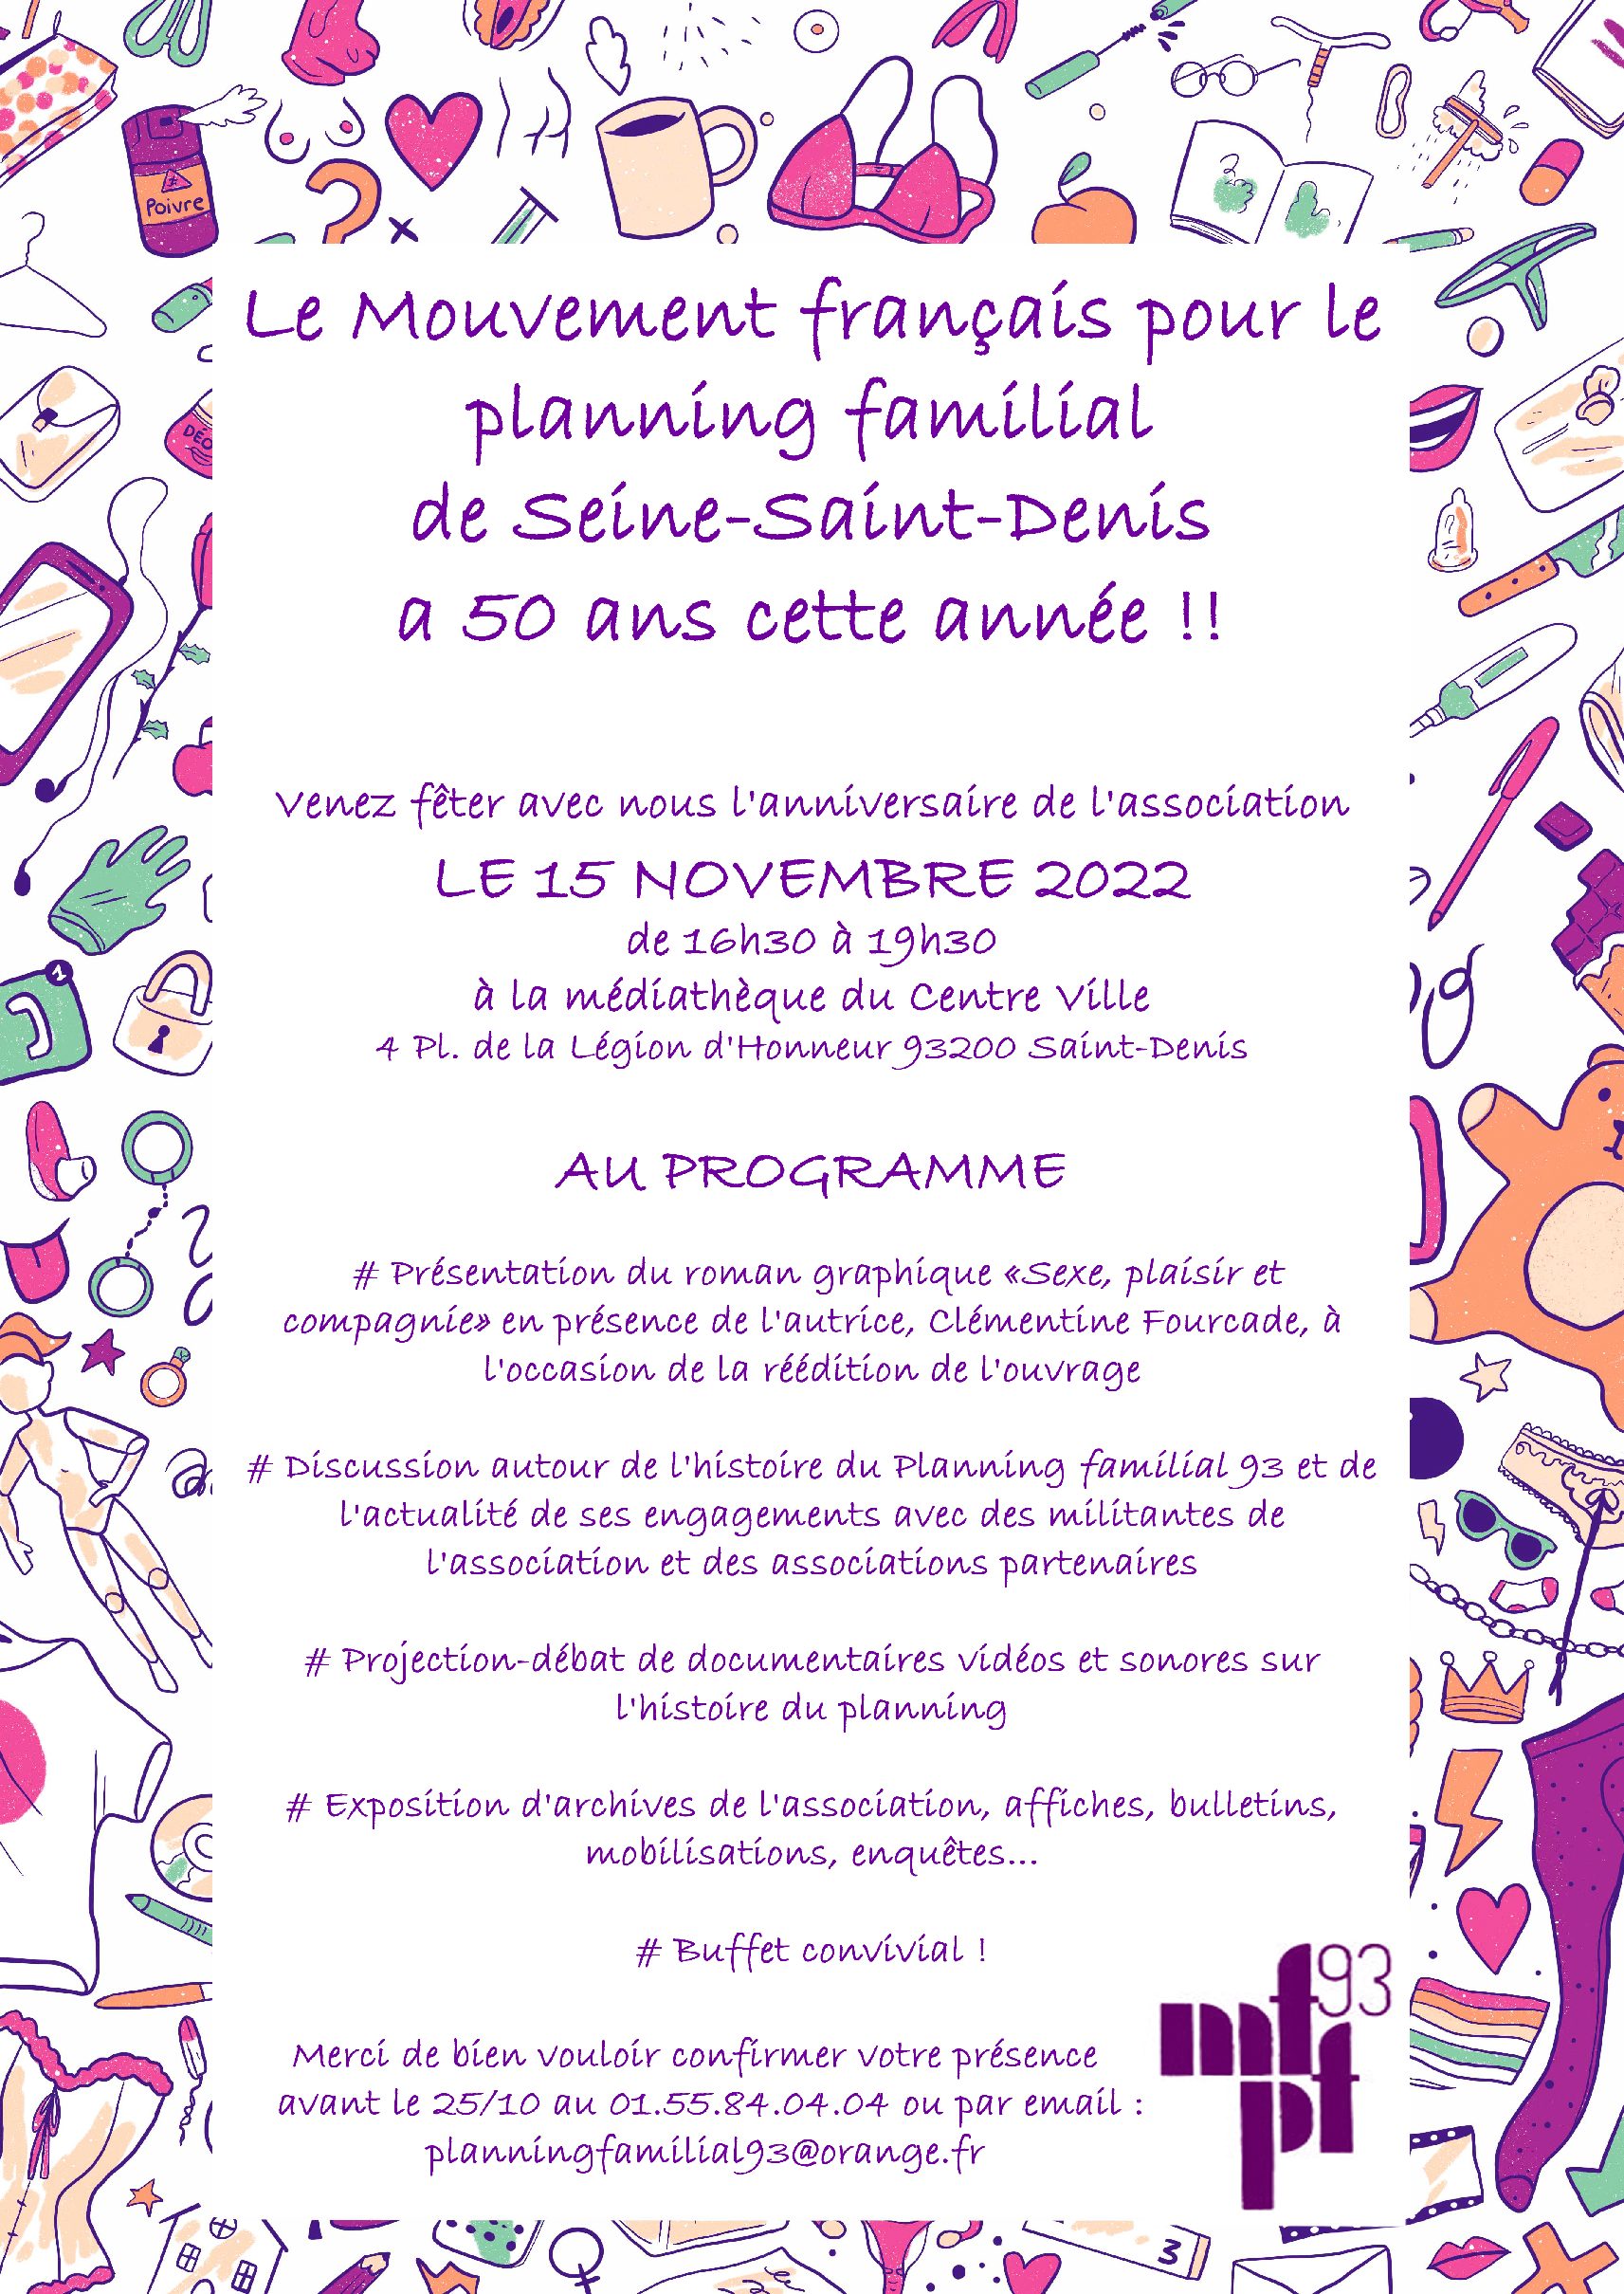 15 novembre 2022 – le mouvement français pour le planning familial de Seine-Saint-Denis a 50 ans cette année.